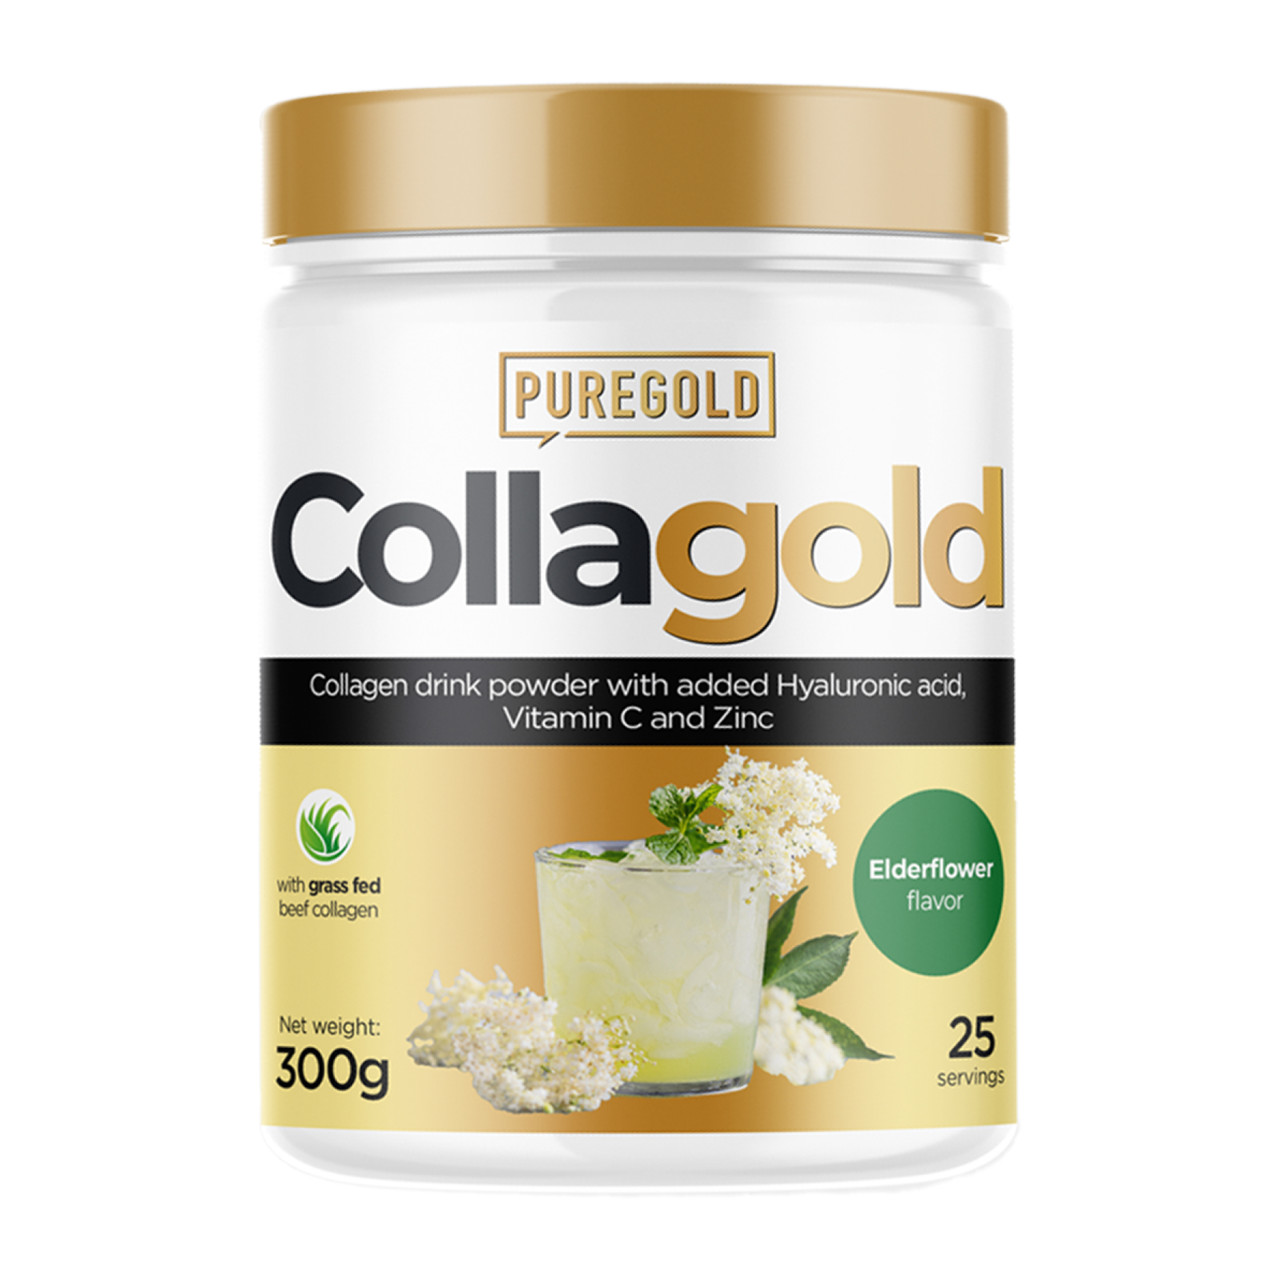 Collagold - 300g Eldelflower